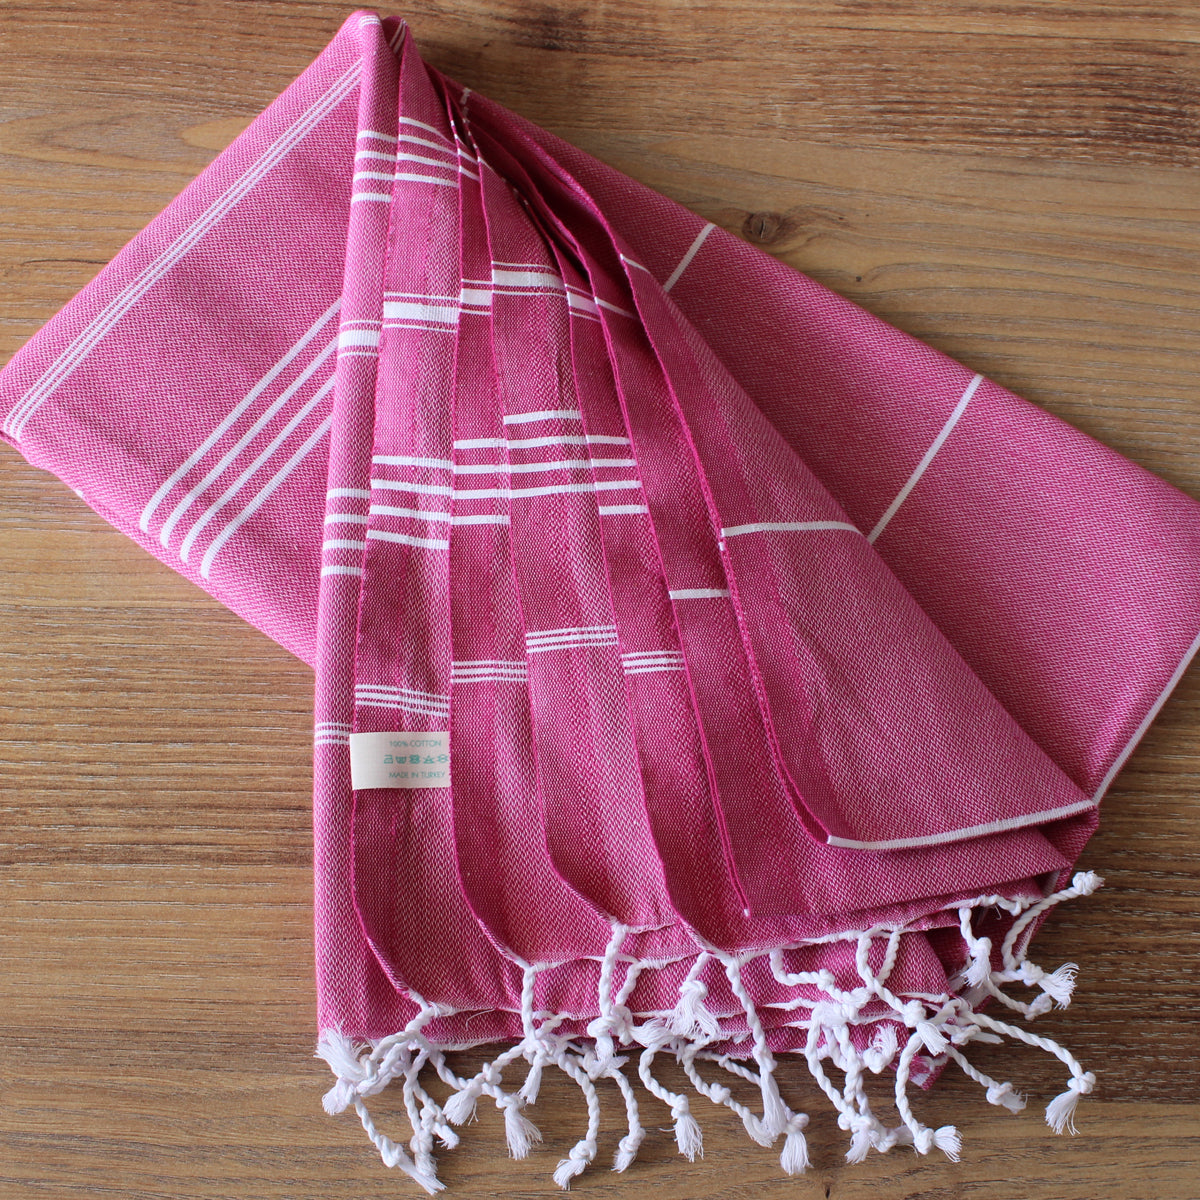 Buckeye Red Turkish towel – QuiQuattro